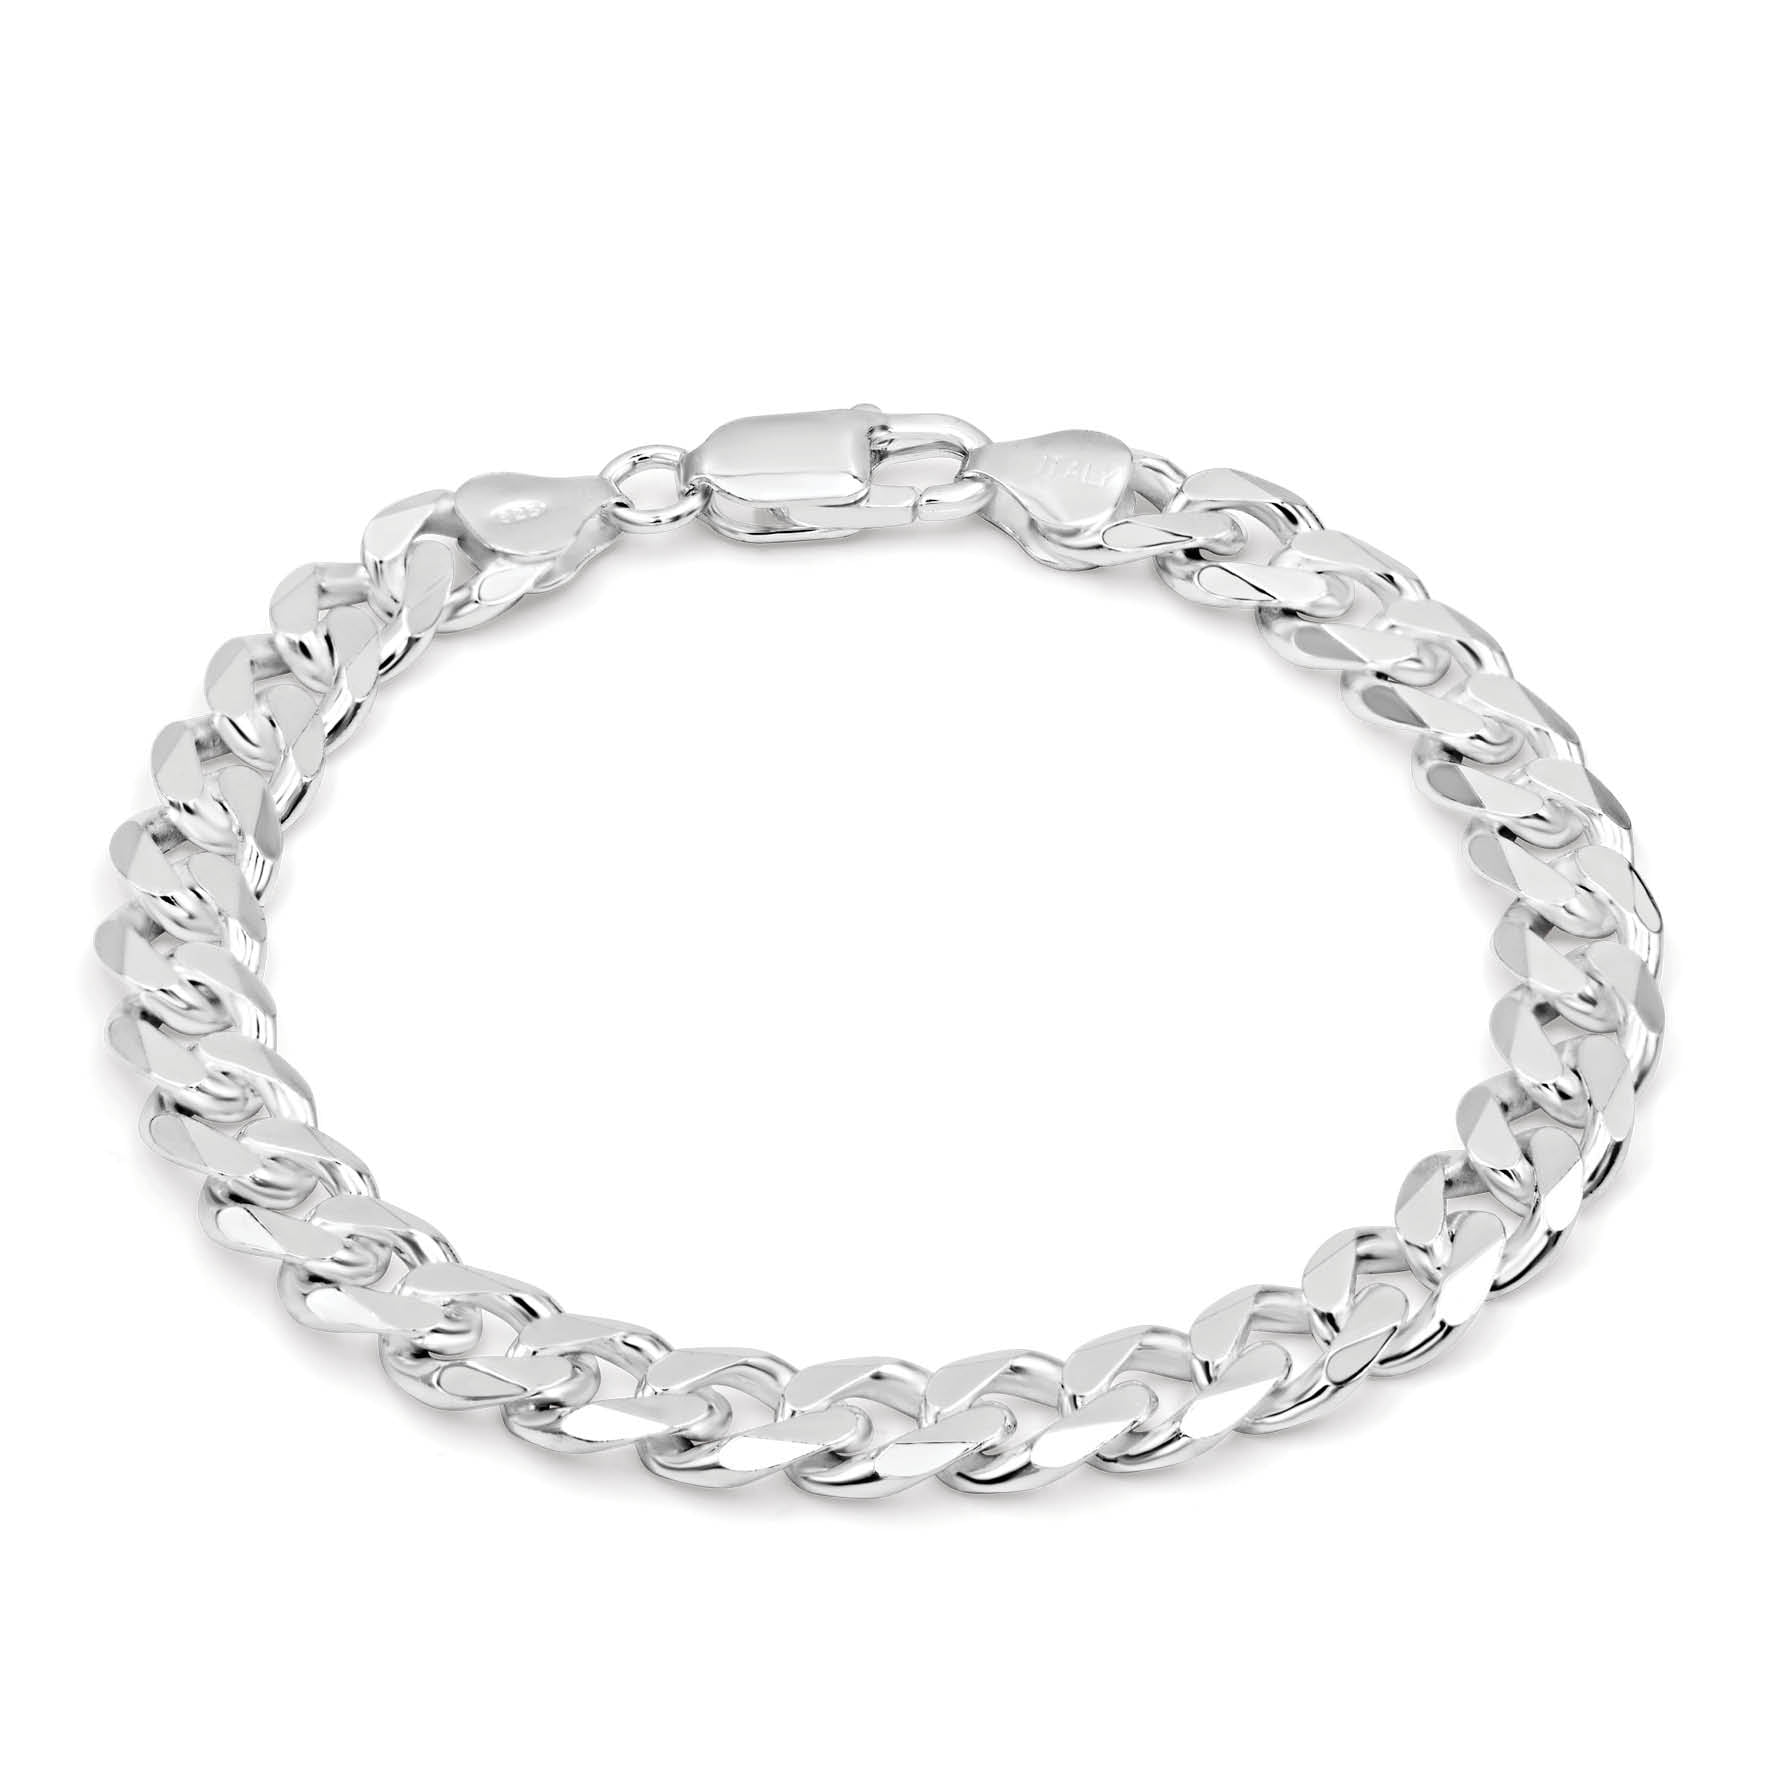 Sterling Silver Link Bracelet 7 14 inch